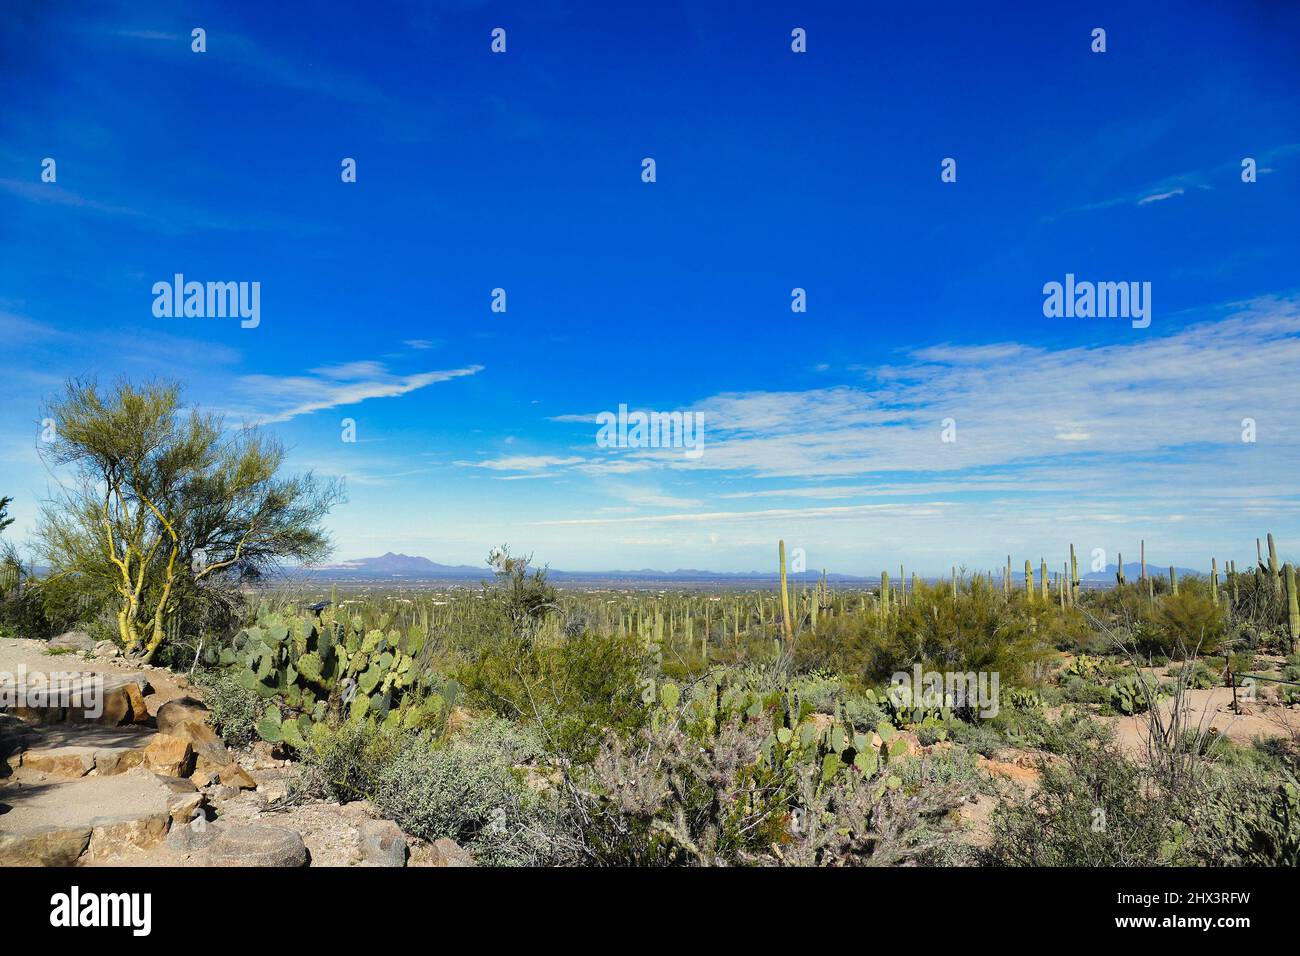 Le désert de Sonoran à signal Hill dans le parc national de Saguaro près de Tucson, Arizona, États-Unis. Saguaros, poires pickly et autres végétation désertique. Banque D'Images